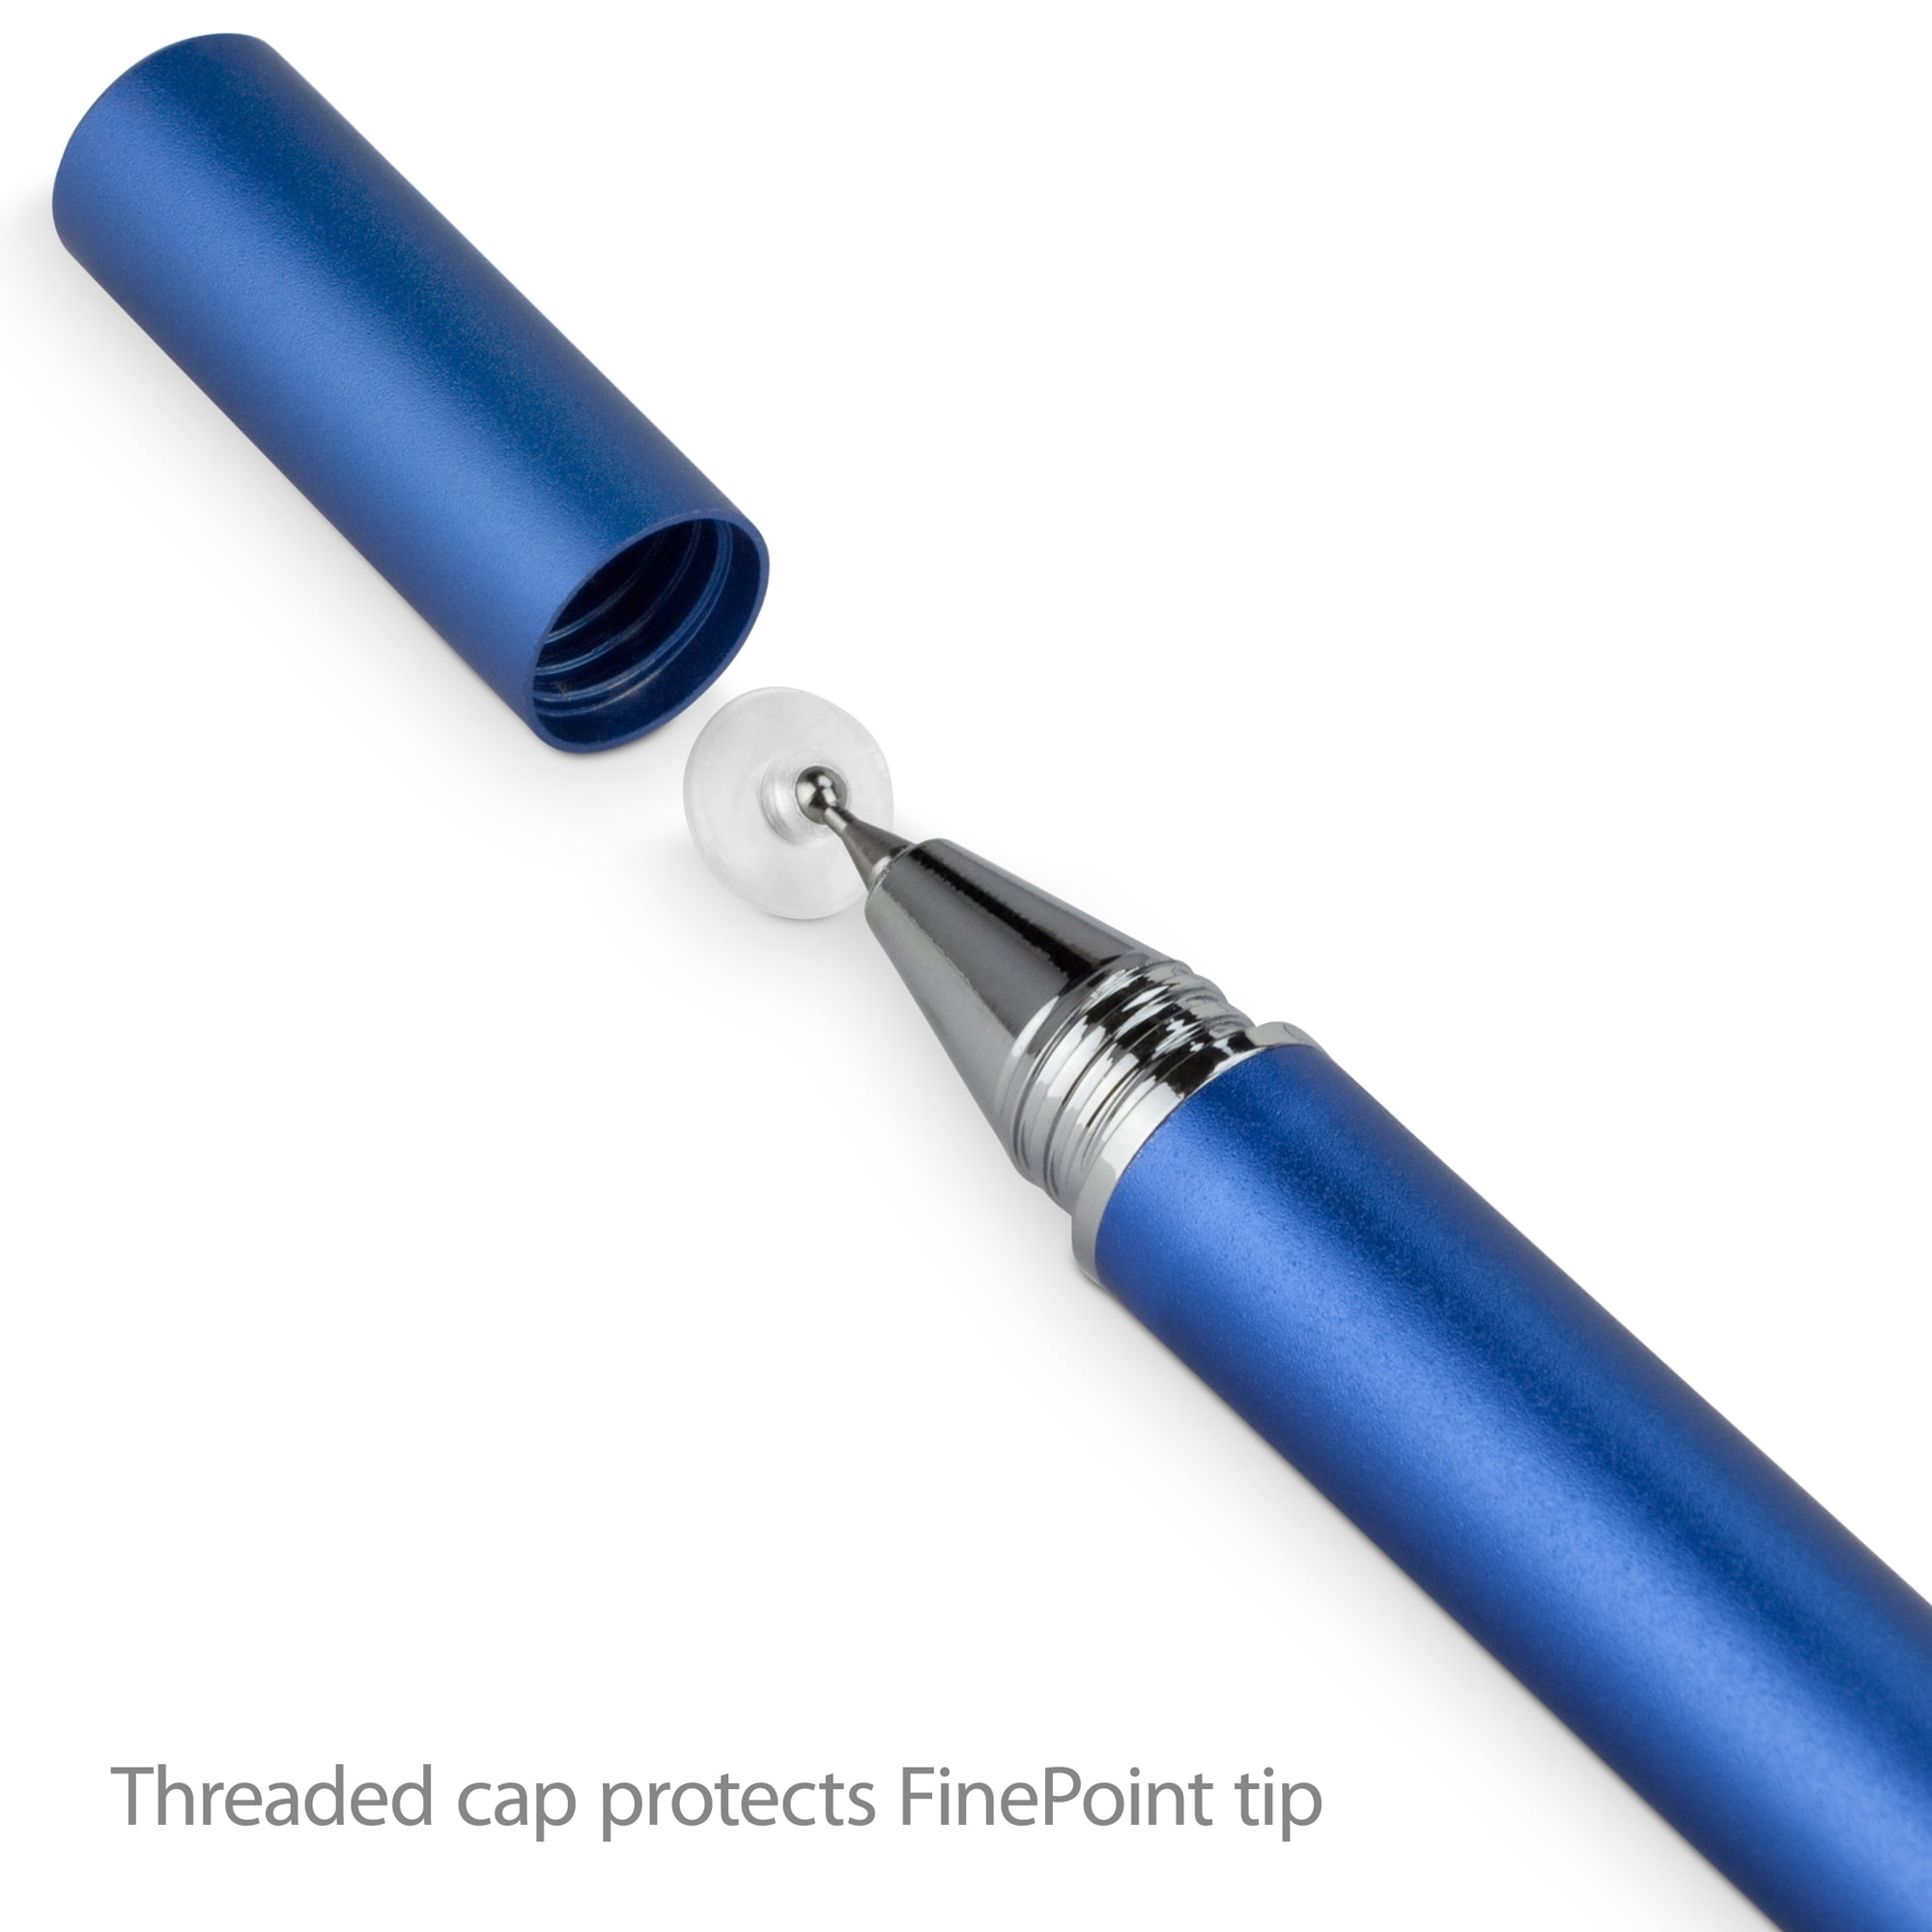 2019 - Metallic Silver FineTouch Capacitive Stylus 2019 Super Precise Stylus Pen for LG K30 BoxWave Stylus Pen for LG K30 